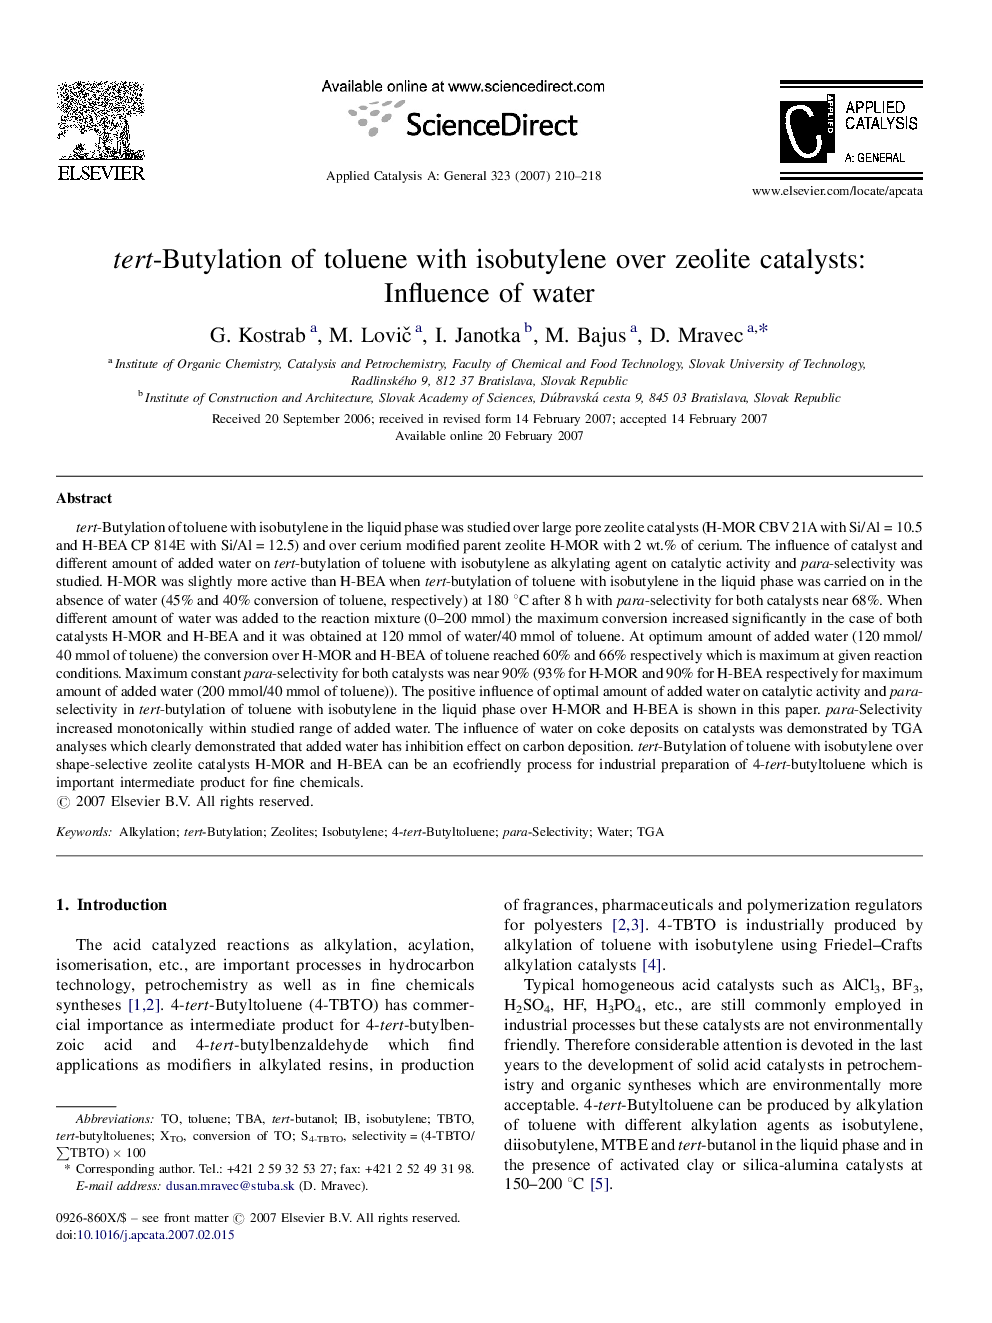 tert-Butylation of toluene with isobutylene over zeolite catalysts: Influence of water